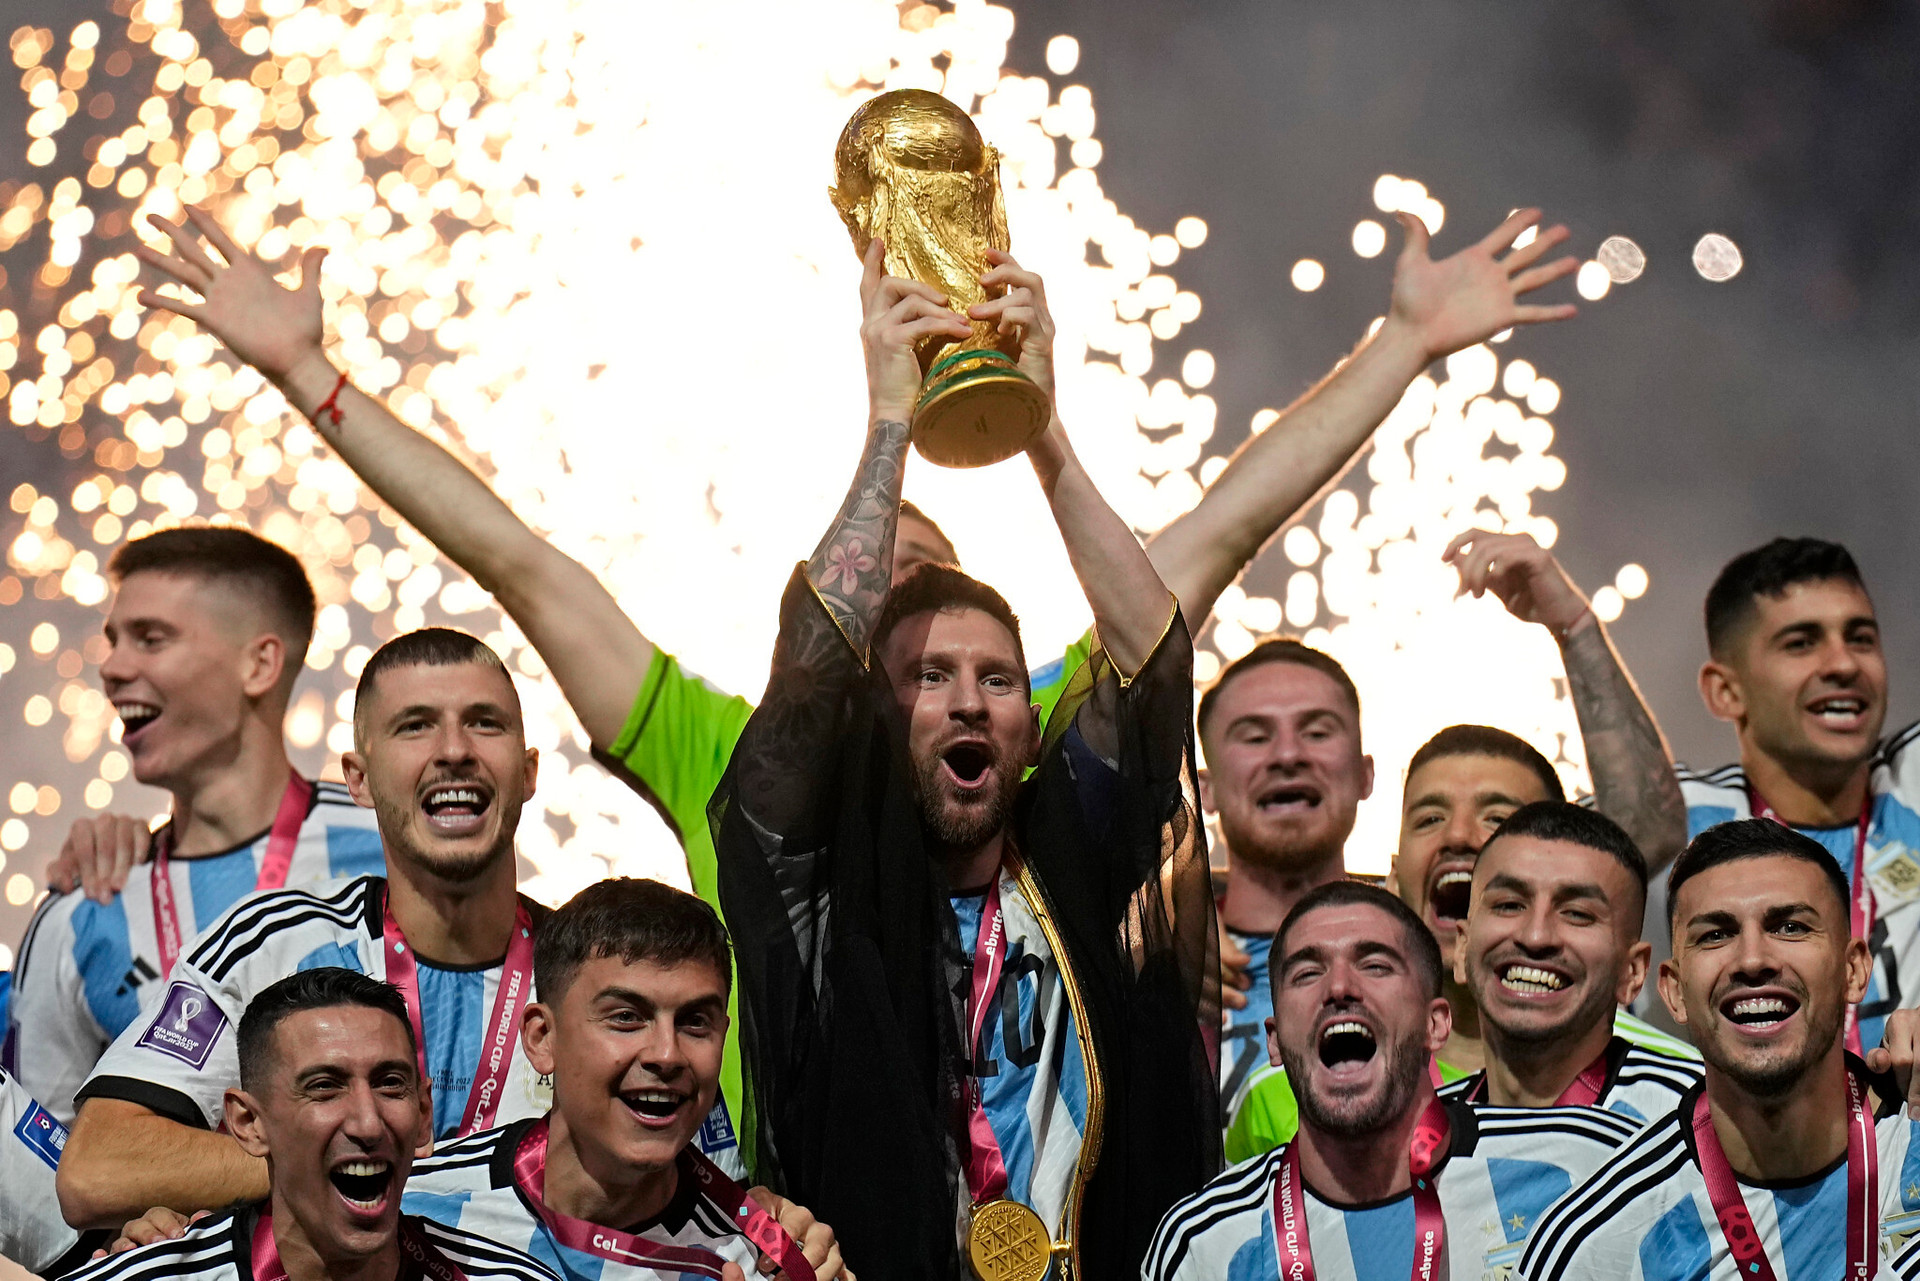 World Cup trophy: Chiếc cúp vô địch World Cup là niềm khát khao của tất cả các đội bóng tham gia giải đấu lớn nhất của bóng đá. Chiêm ngưỡng hình ảnh chiếc cúp quý giá này và những câu chuyện đằng sau nó sẽ khiến bạn thêm phần hứng thú khi theo dõi giải đấu tuyệt vời này.